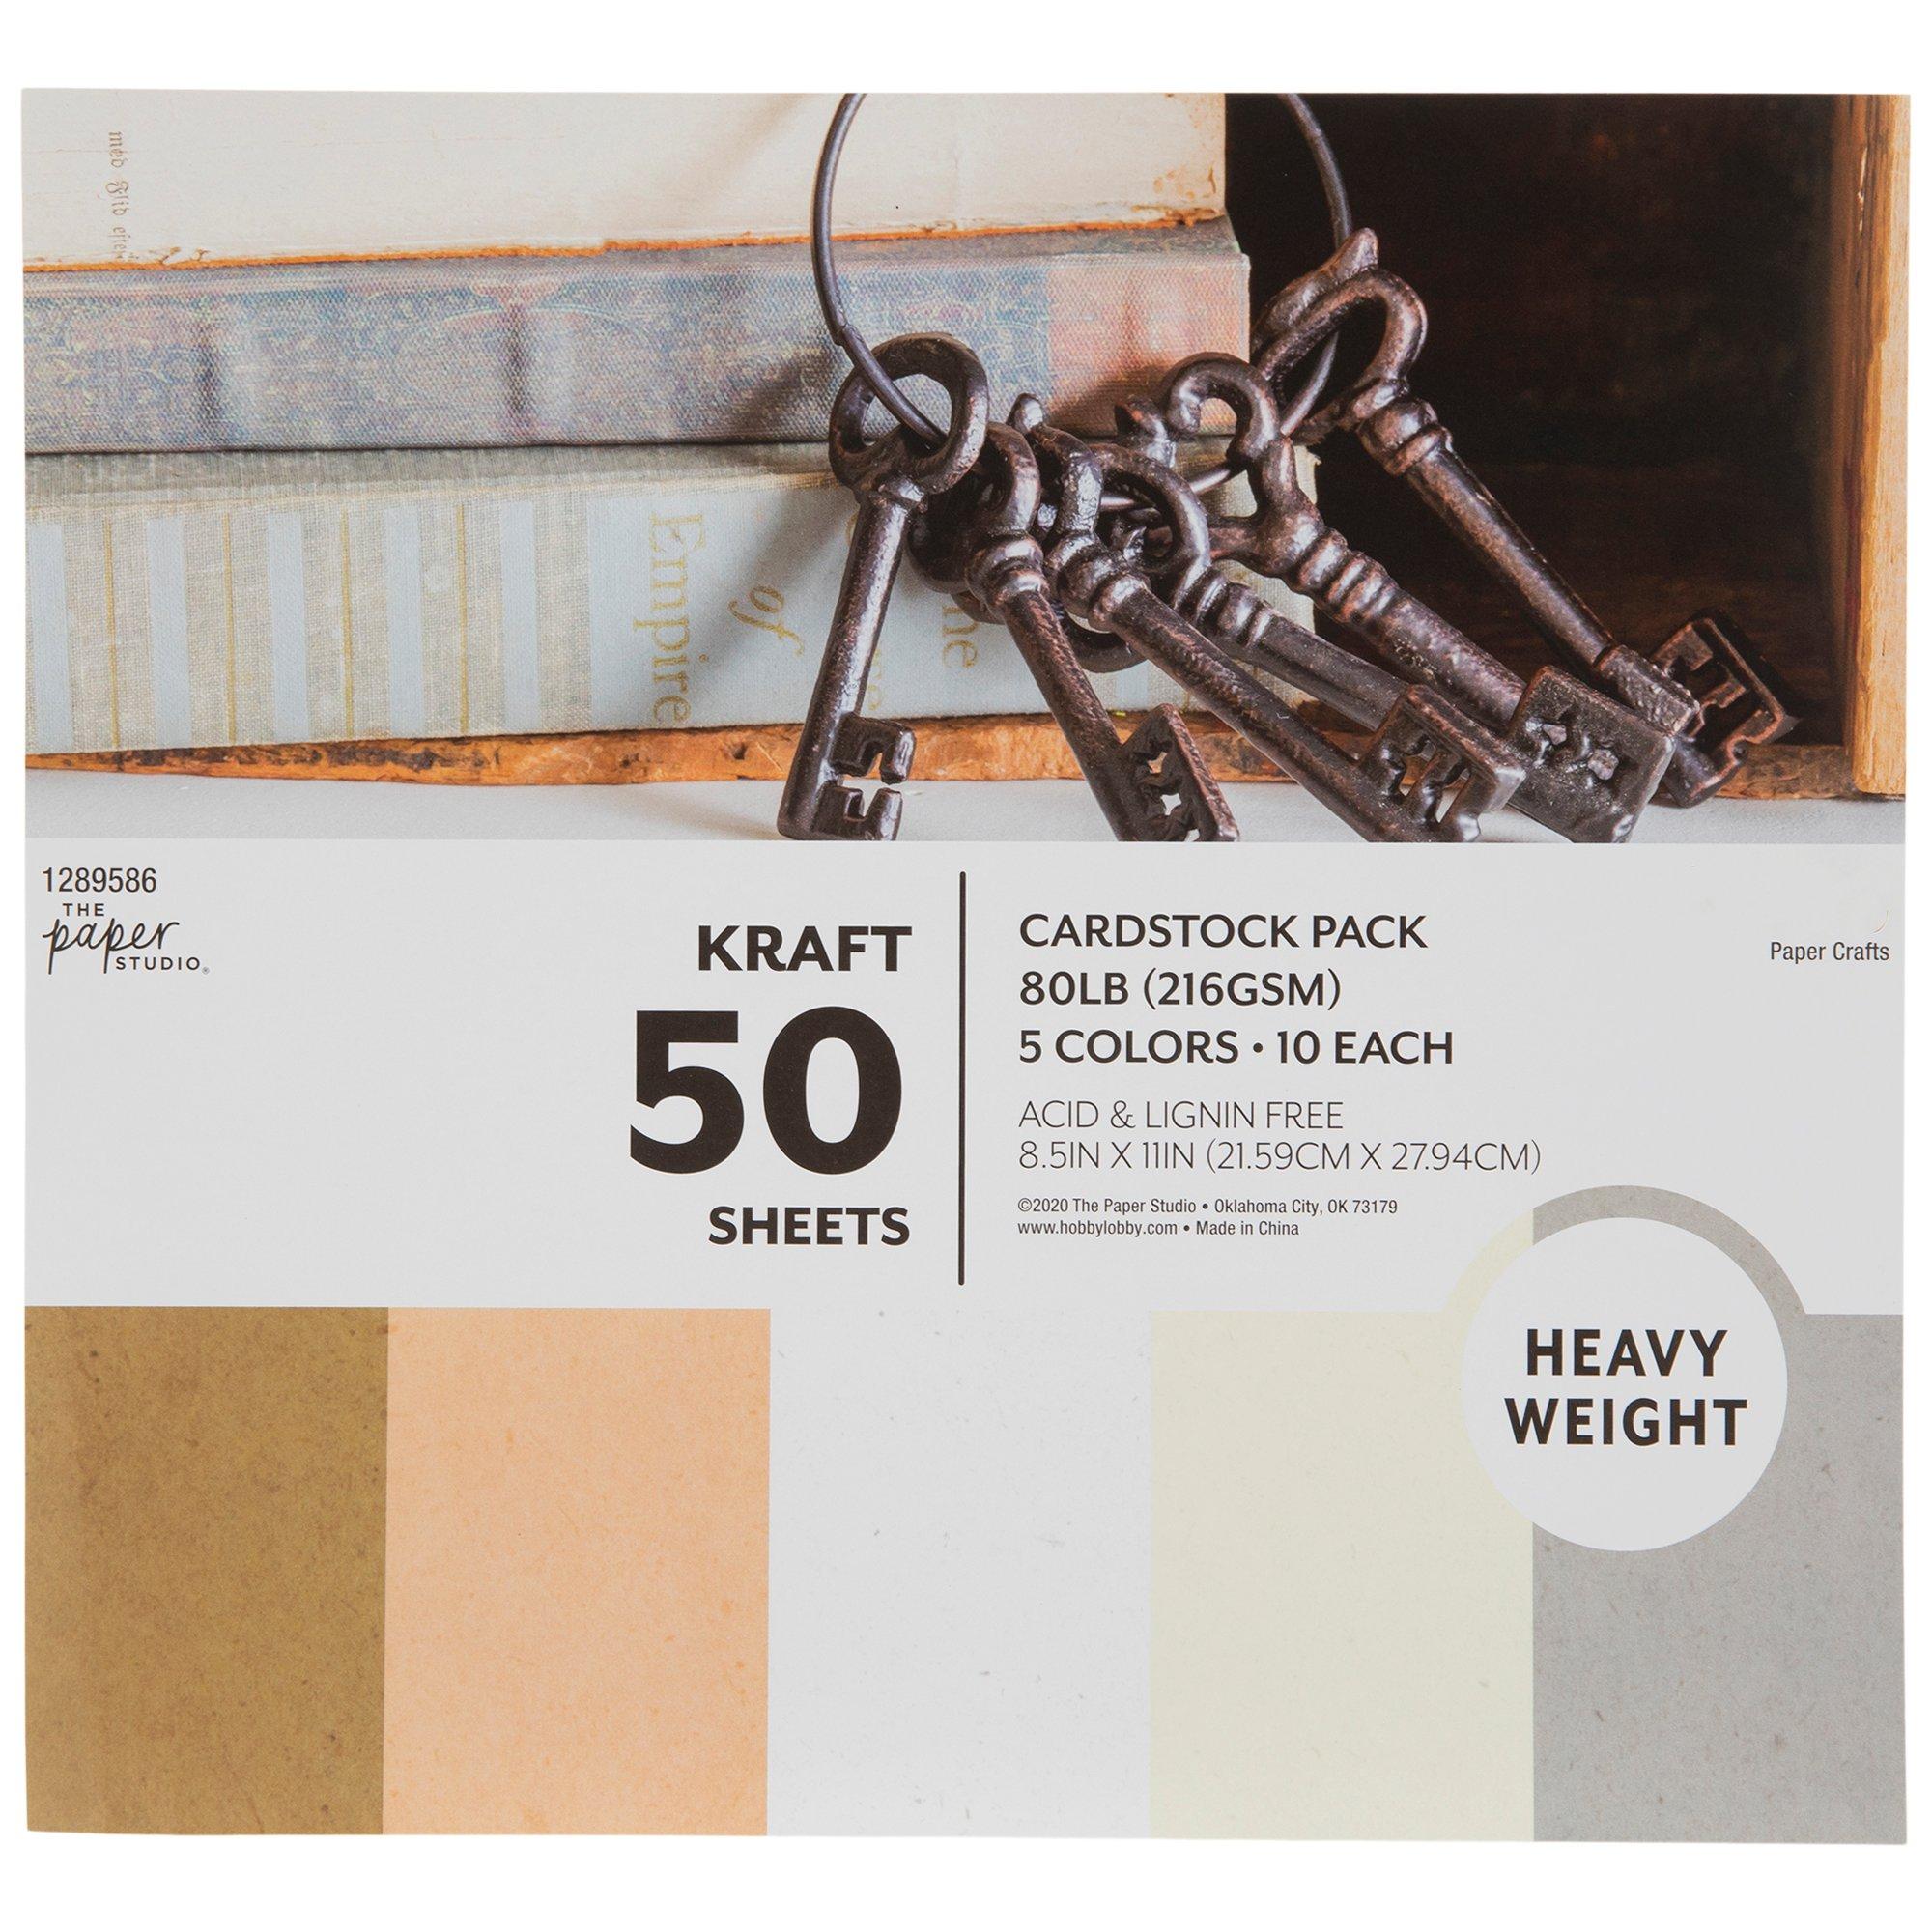 Premium Krafty Cardstock 8.5 x 11 – Brooklyn Craft Company